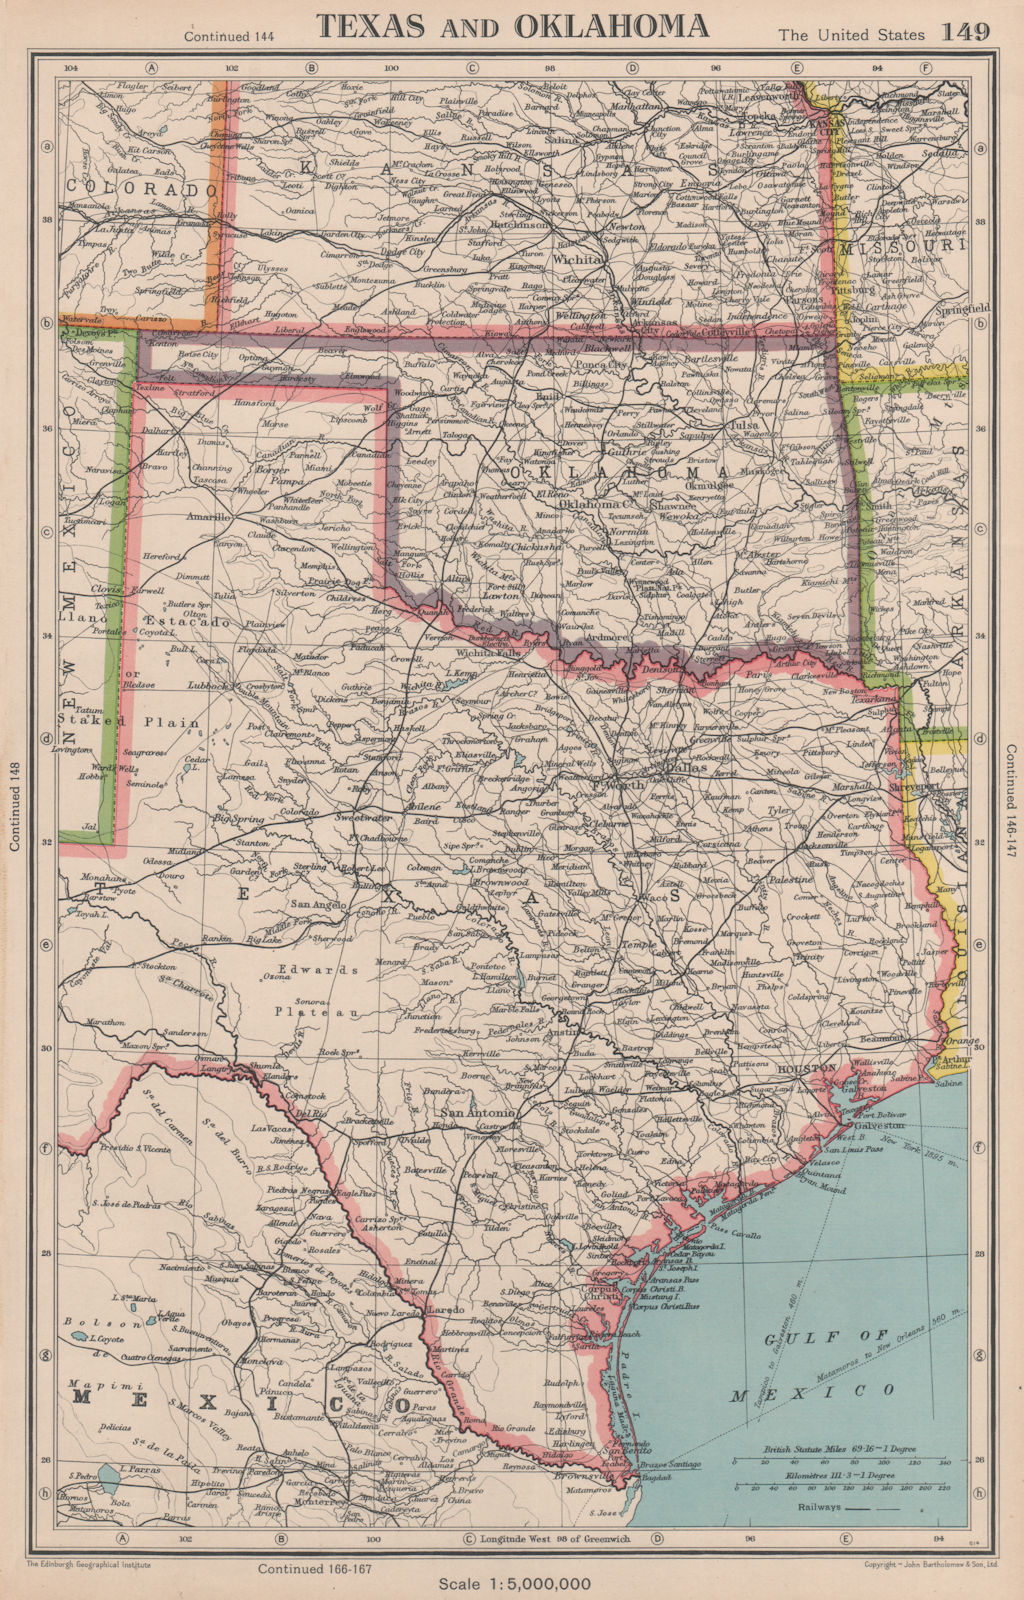 Associate Product TEXAS AND OKLAHOMA. USA state map. BARTHOLOMEW 1944 old vintage plan chart